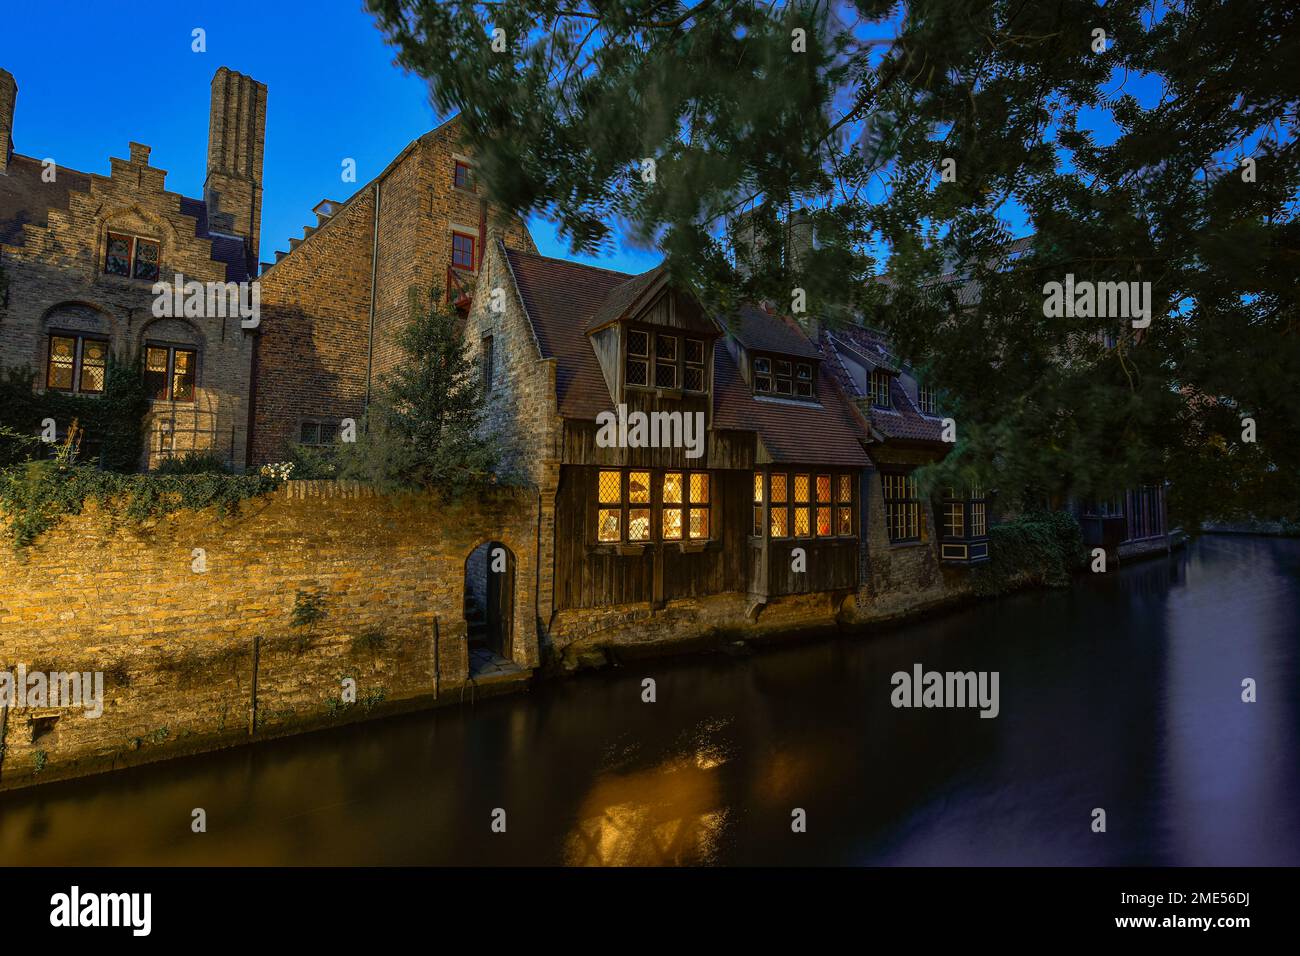 Belgique, Flandre Occidentale, Bruges, maisons historiques le long du canal de la ville au crépuscule Banque D'Images